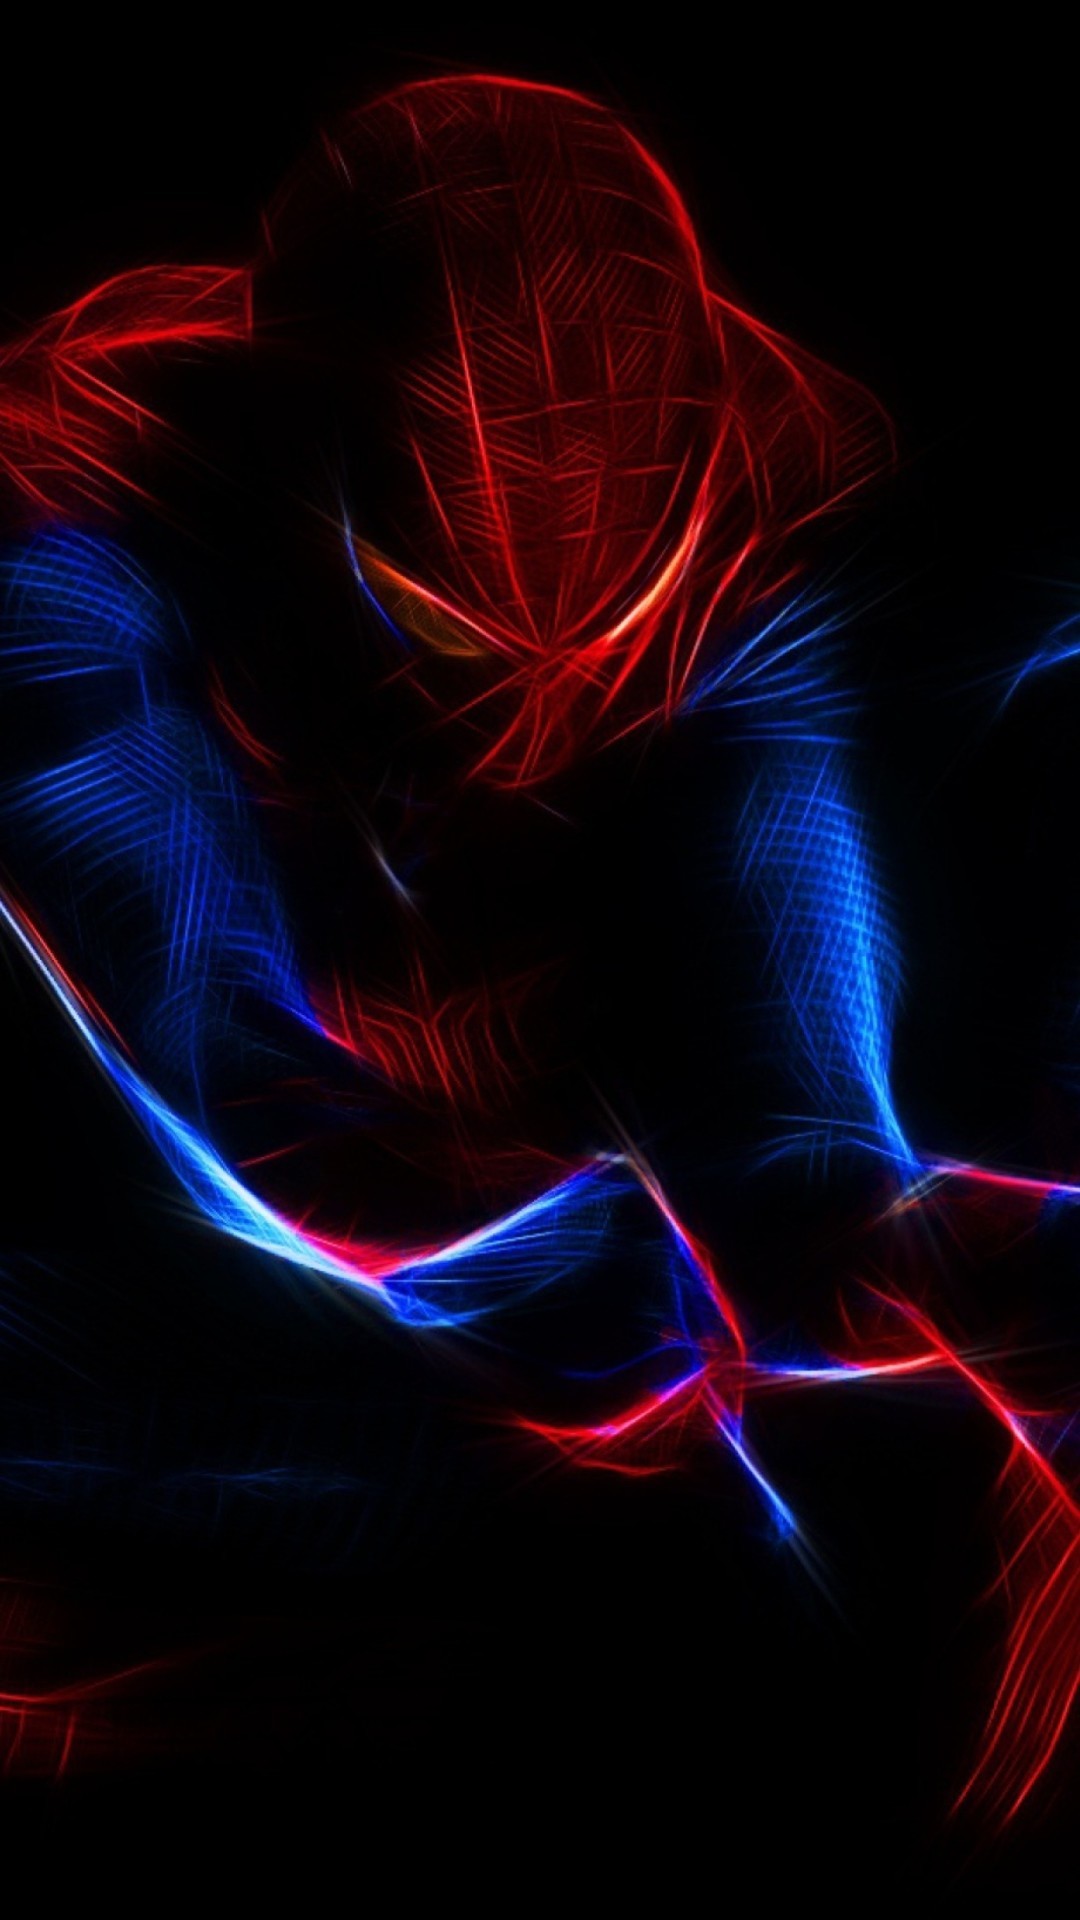 spiderman sfondi iphone,rosso,blu,blu elettrico,leggero,disegno grafico